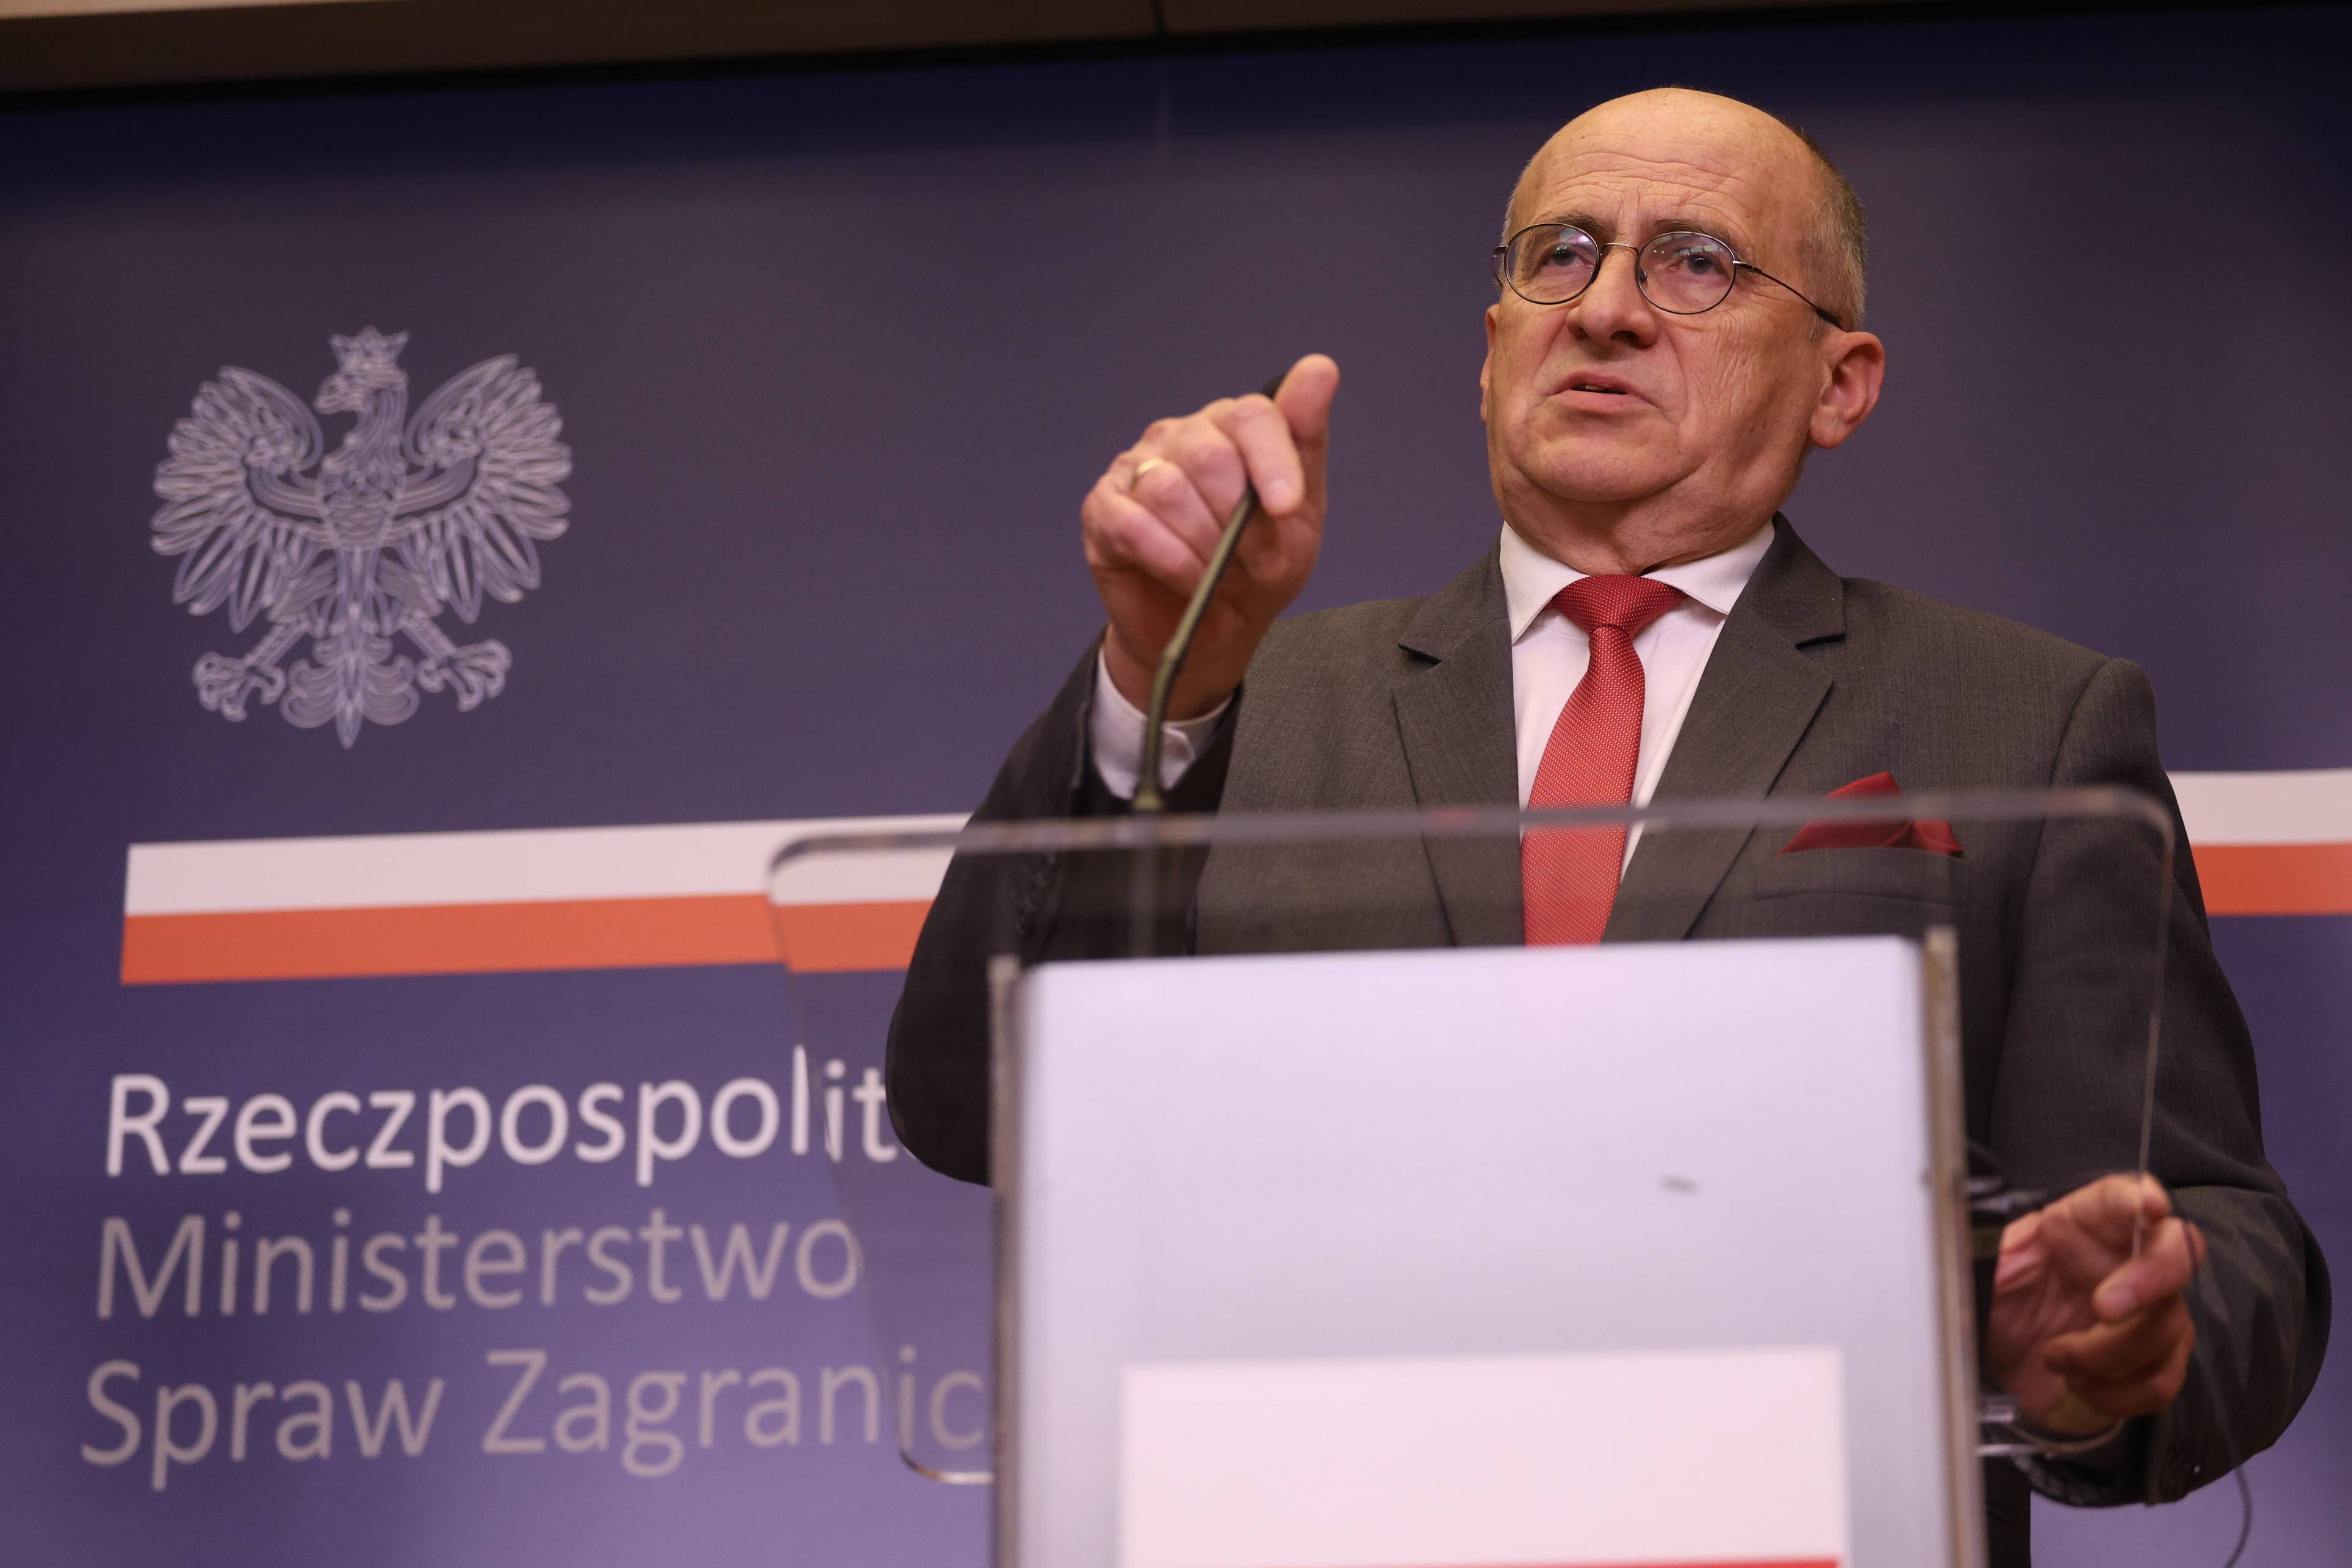 Minister spraw zagranicznych Zbigniew Rau przemawia przed pulpitem, na tle napisu "Ministerstwo Spraw Zagranicznych"